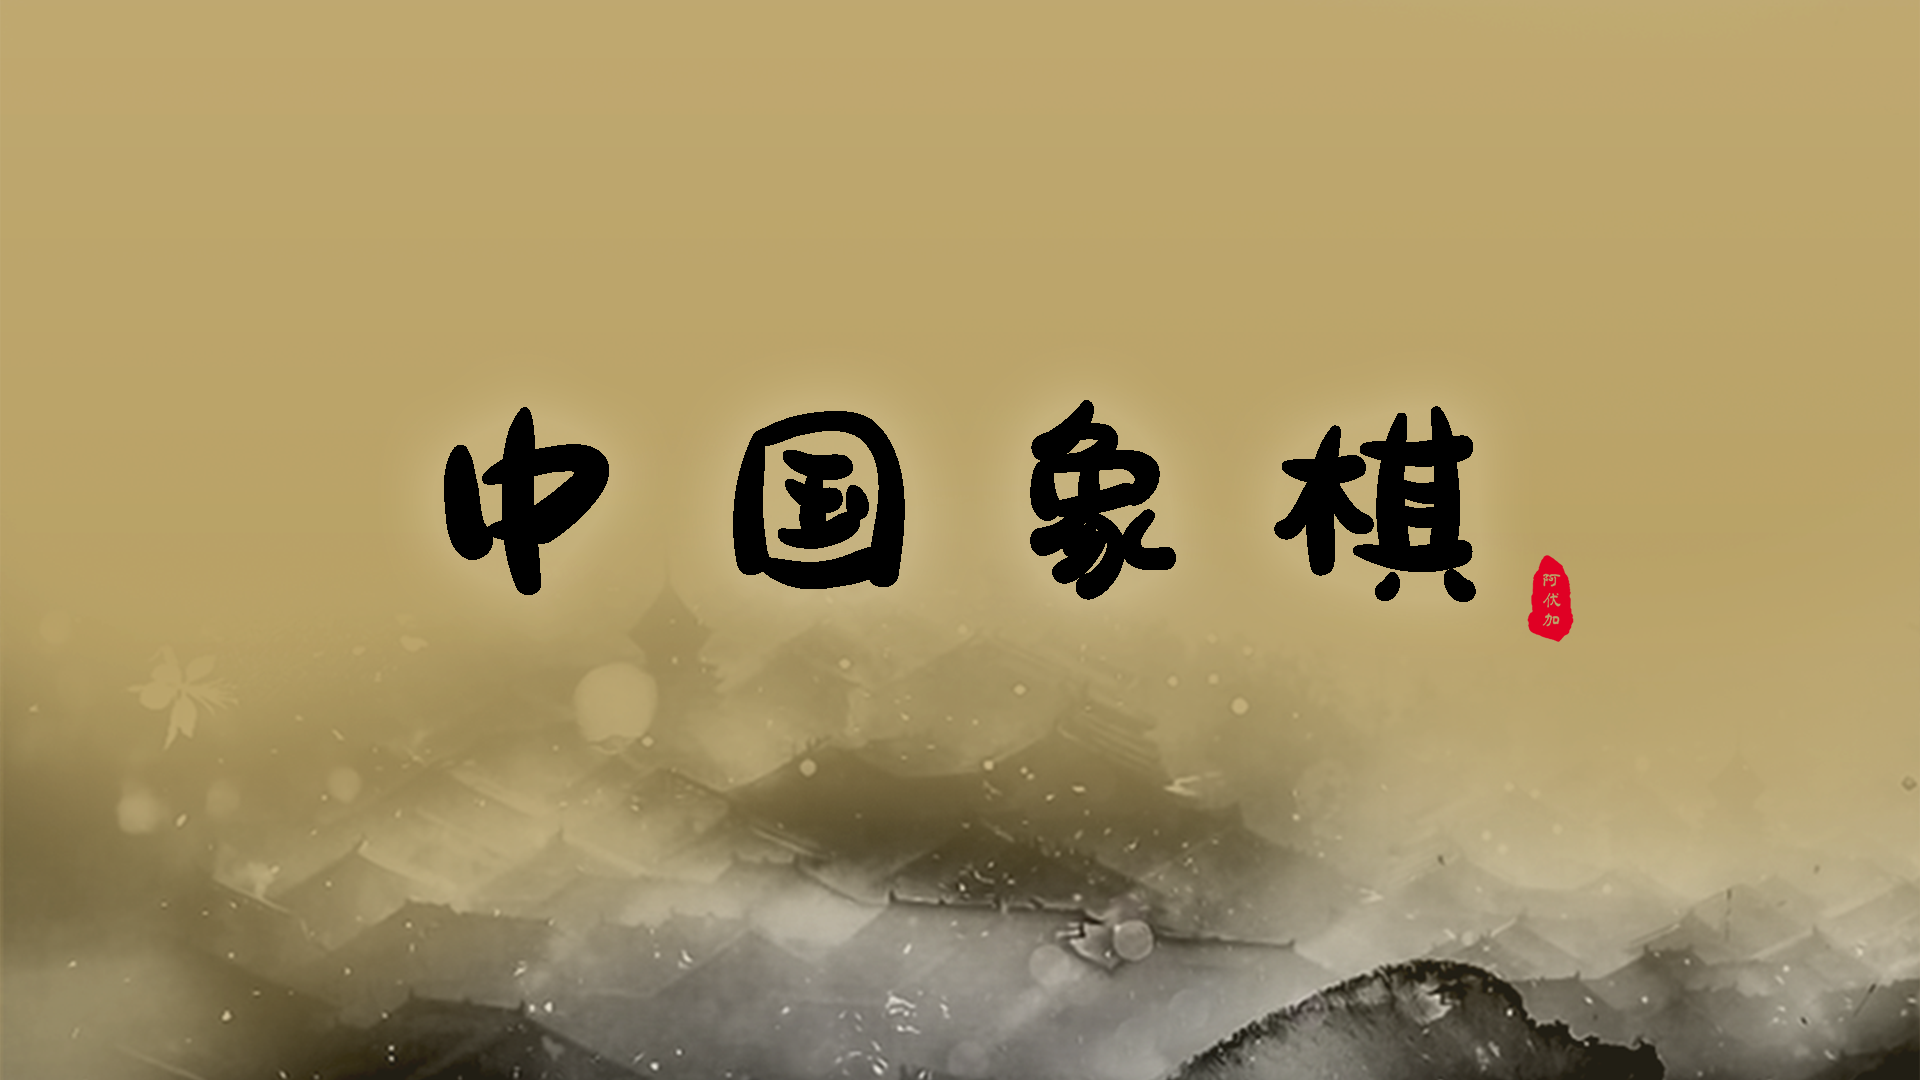 Banner of 中国のチェス 